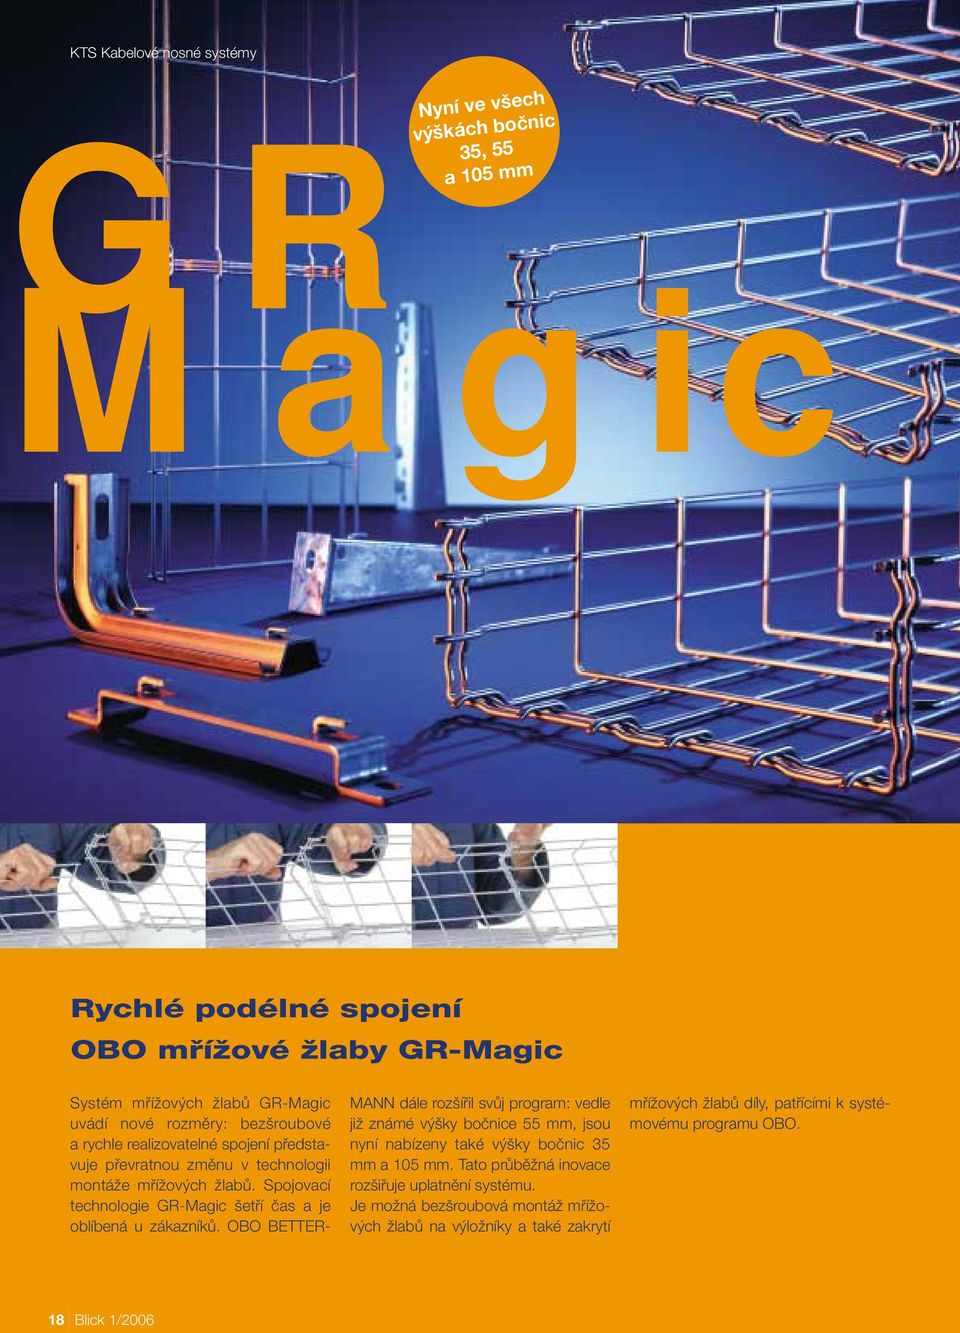 Spojovací technologie GR-Magic etfií ãas a je oblíbená u zákazníkû.